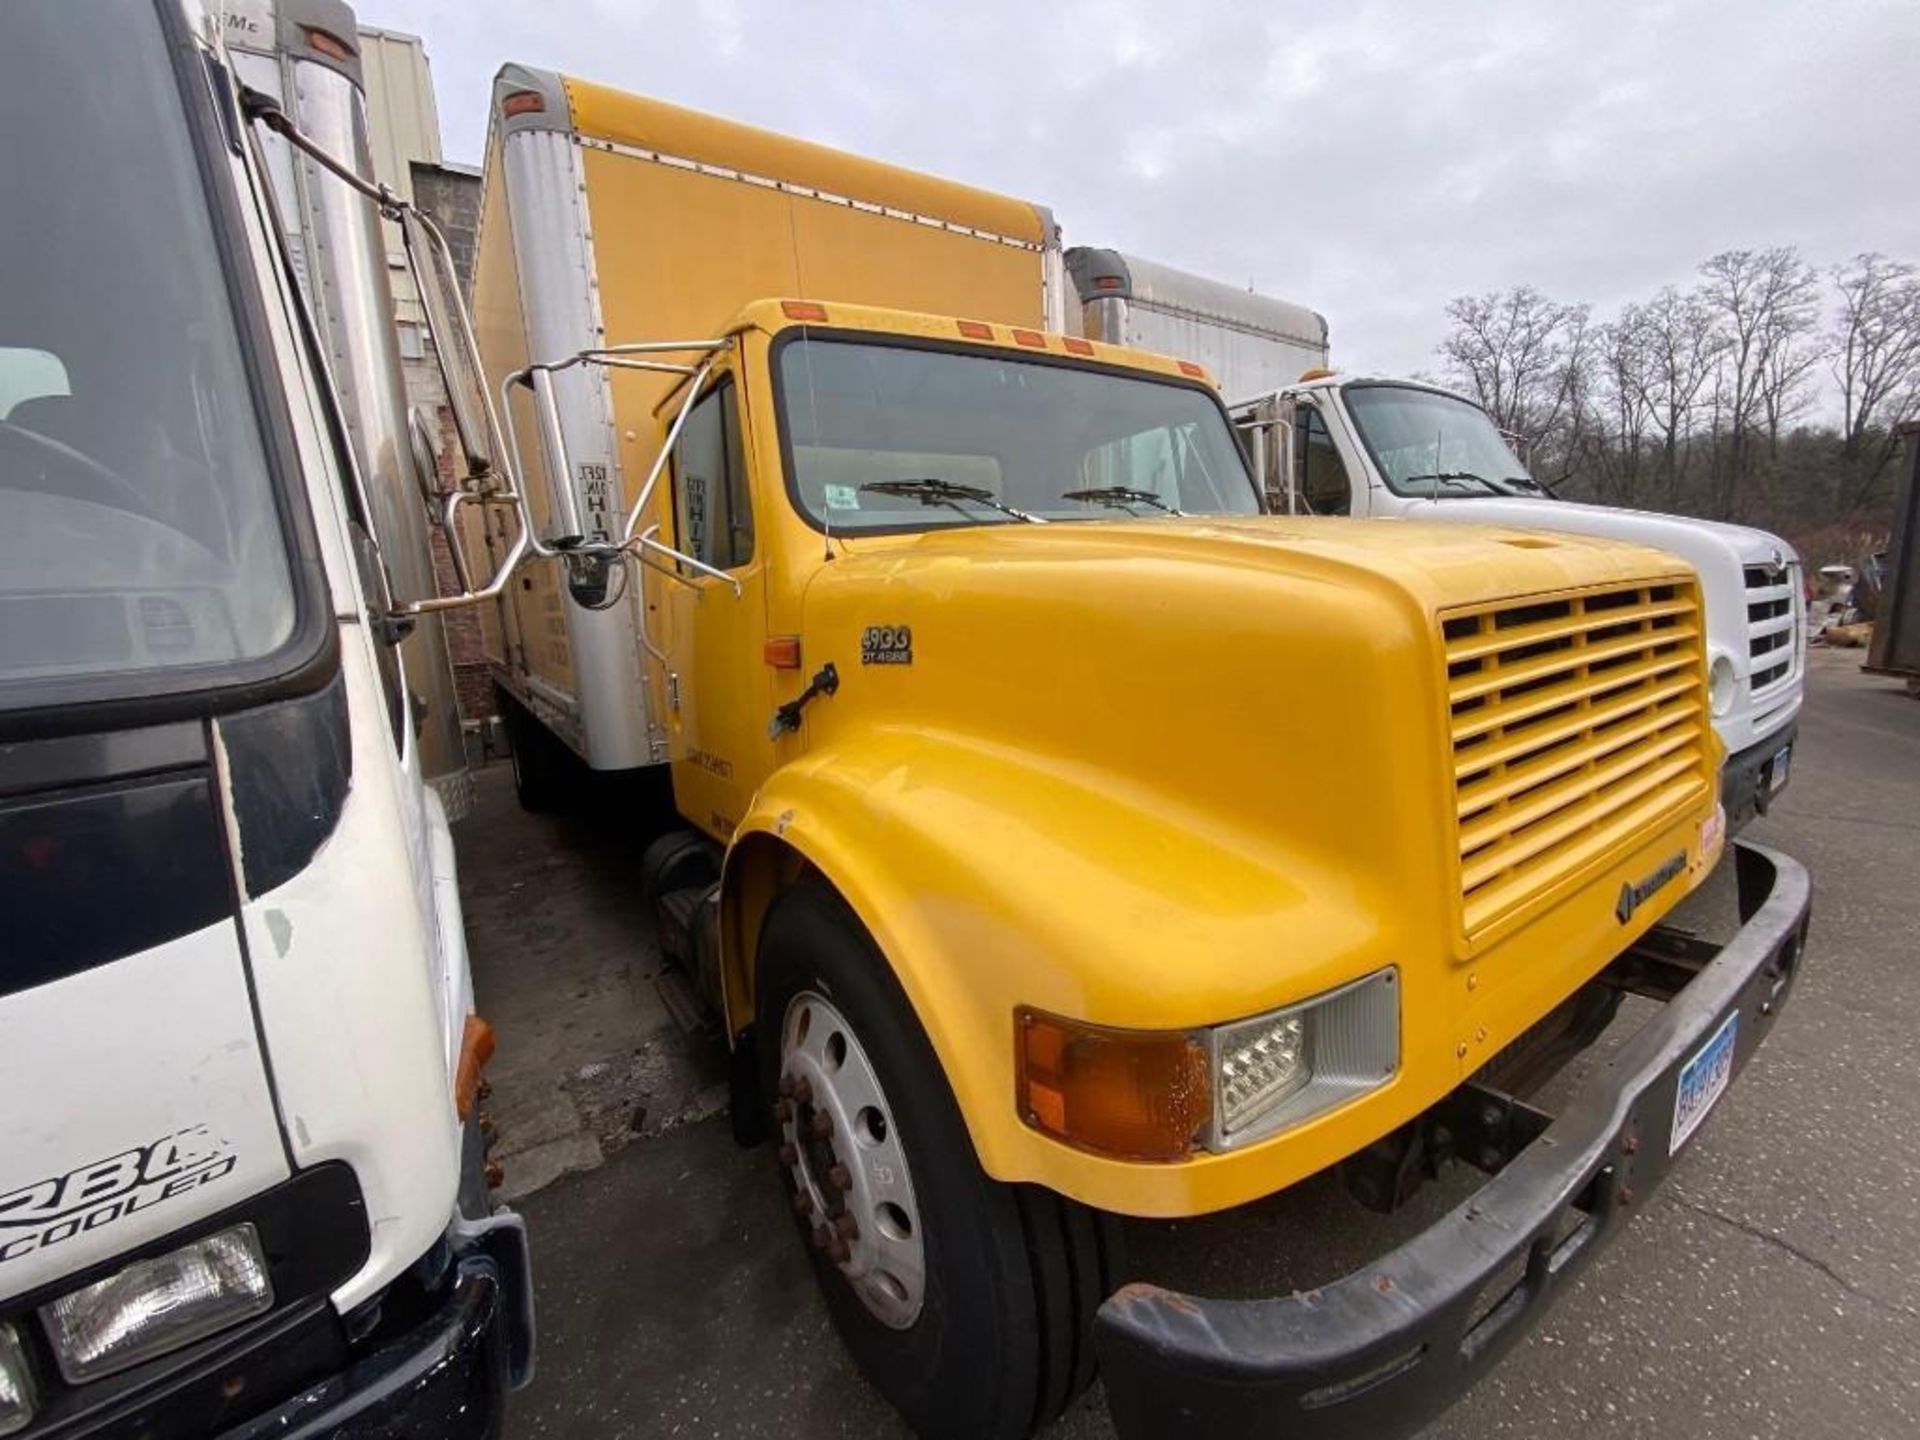 2000 International 4900 Diesel box truck, 24ft body, 5 speed, VIN 1HTSDAAM1YH309531 174,514 miles, - Image 3 of 12